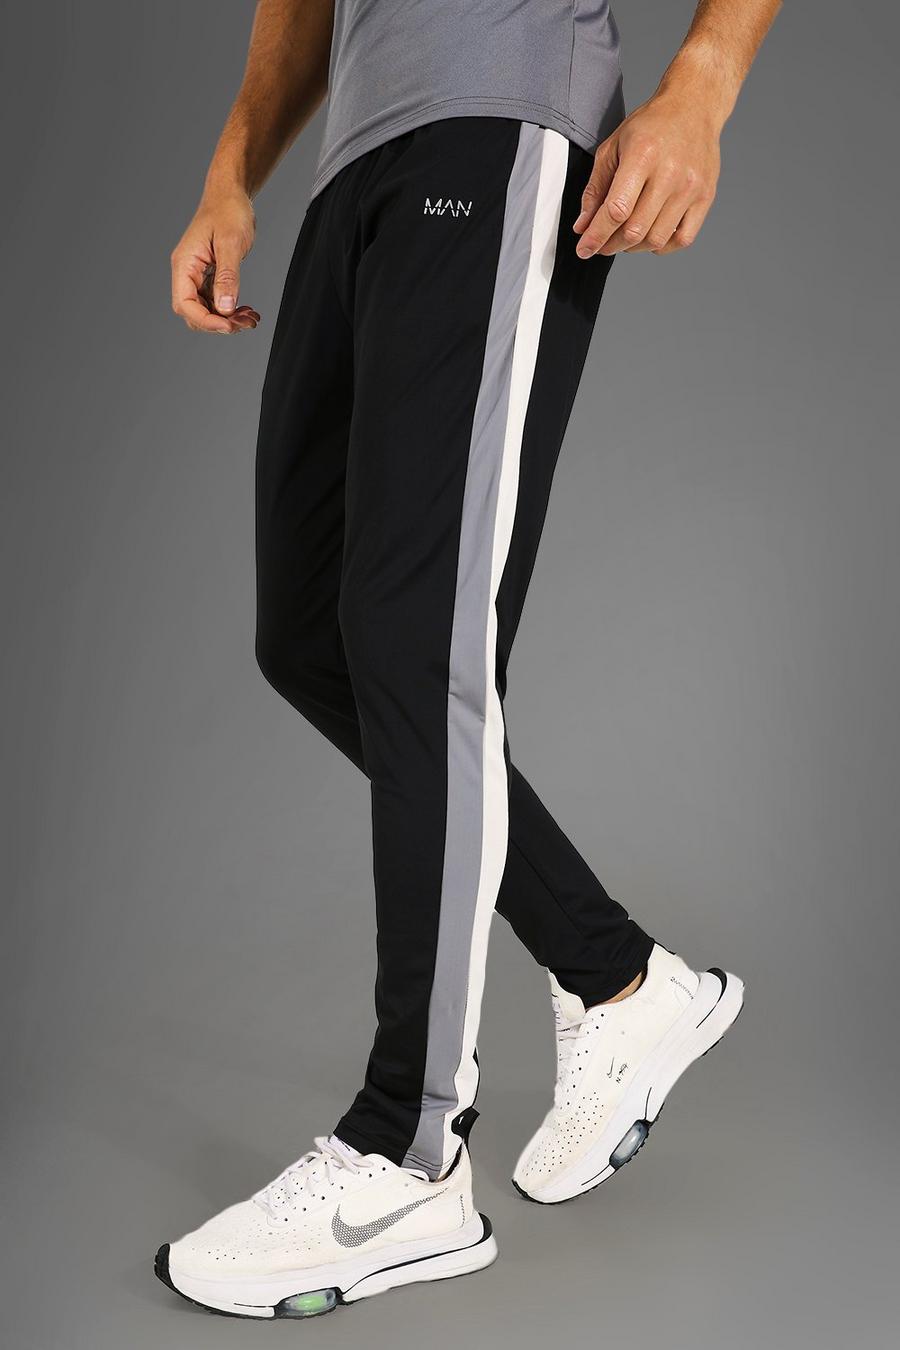 שחור מכנסי טרנינג ספורטיביים לאימונים עם בלוק צבע מסדרת Man, לגברים גבוהים image number 1